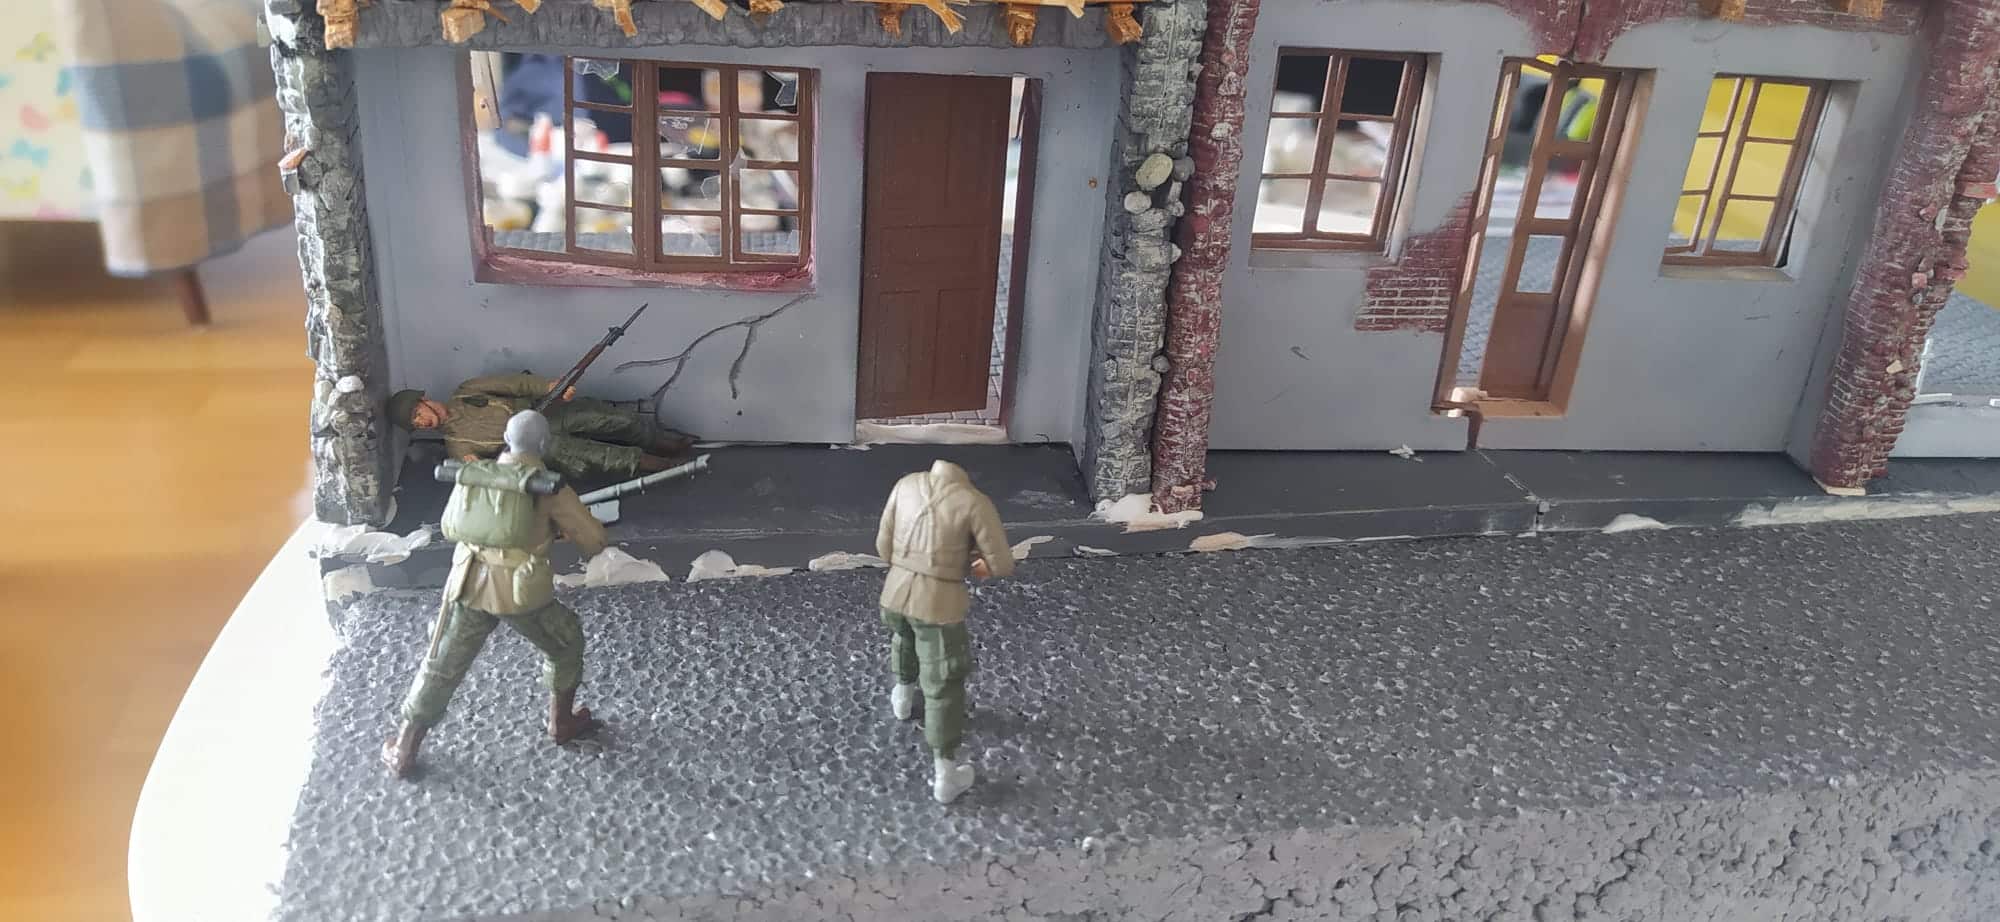 A scene from the Remagen street battles-15